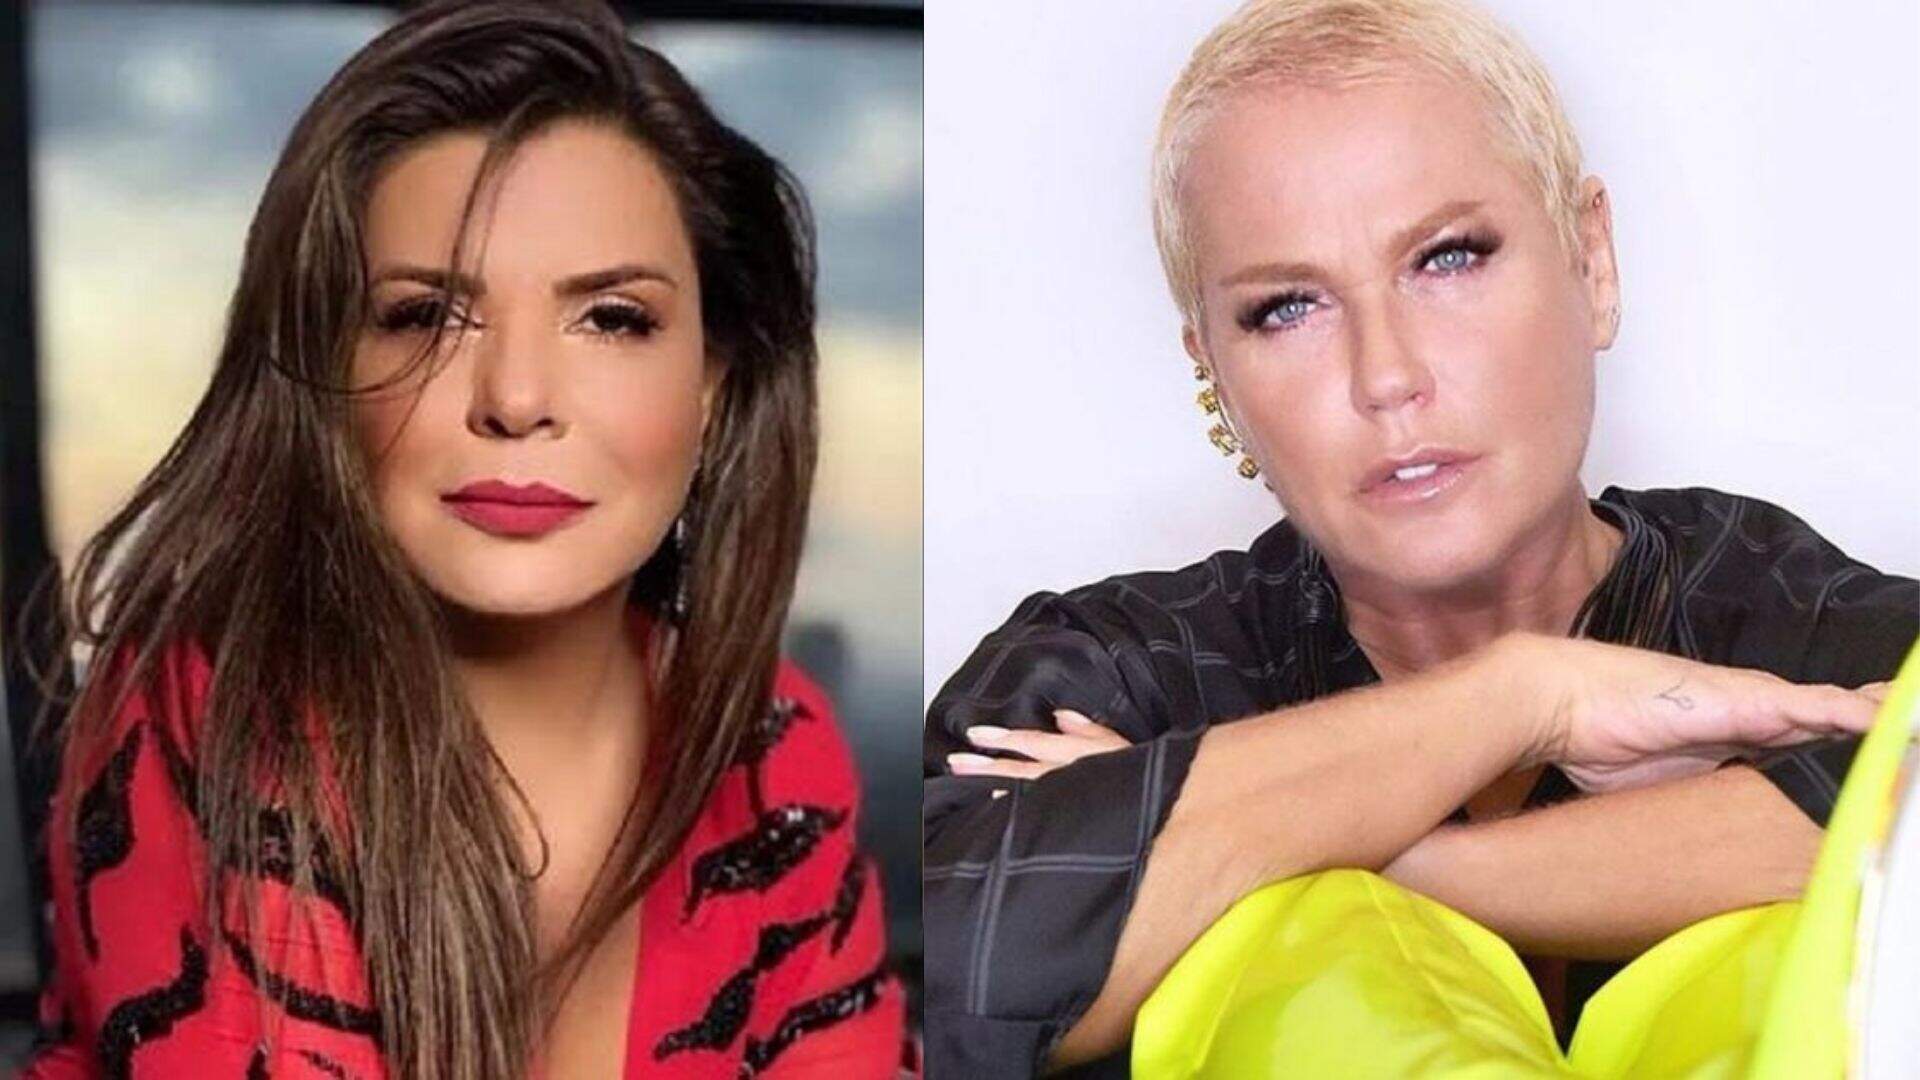 Ao vivo! Mara Maravilha critica Xuxa, expõe tudo que pensa e motivo viraliza: “Errada!”